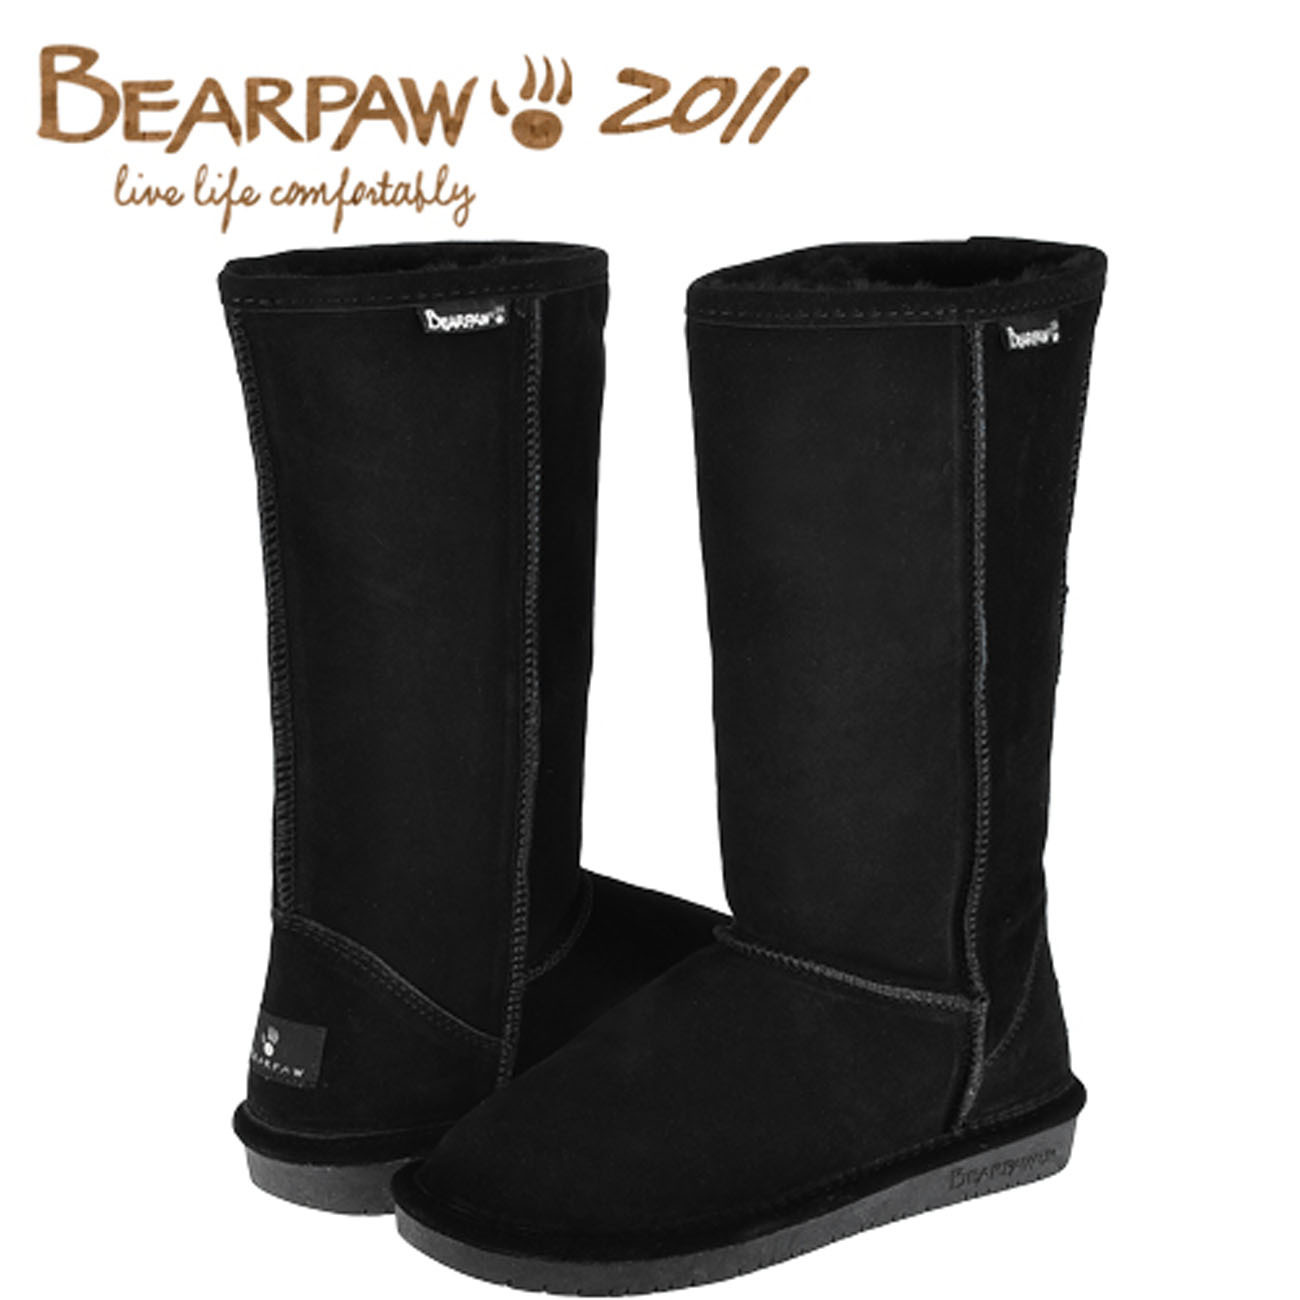 正品2011新款 美国bearpaw熊掌612 牛皮羊毛高筒雪地靴 高筒靴